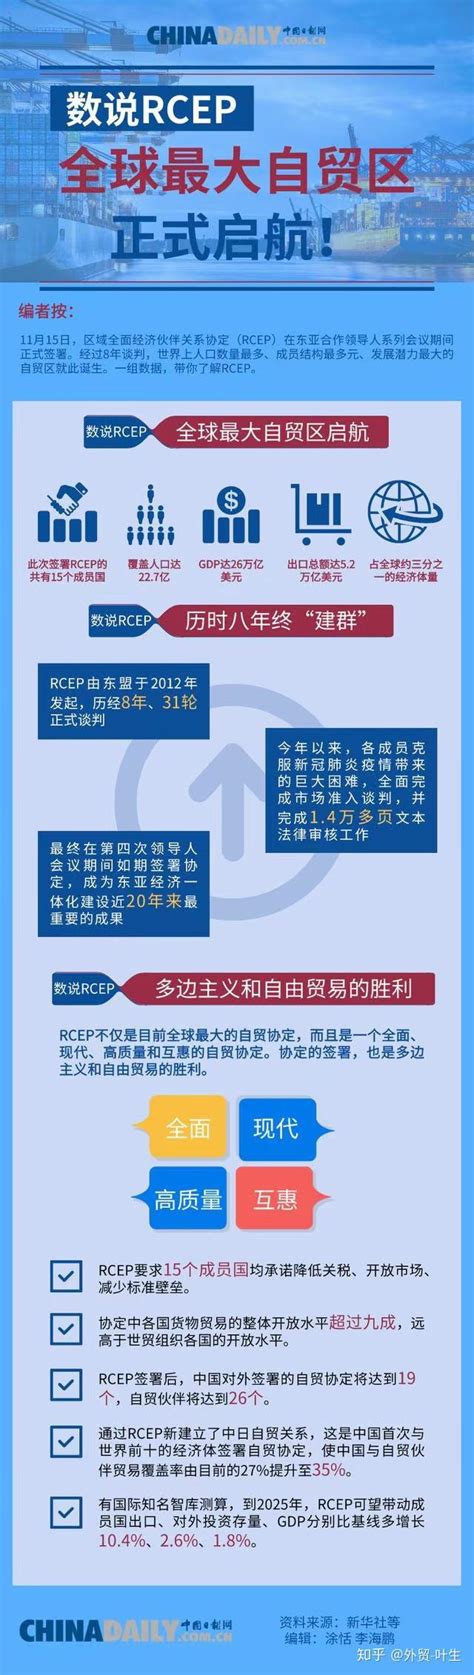 “红利账单”精准送 税惠享受更有感-中国网海峡频道